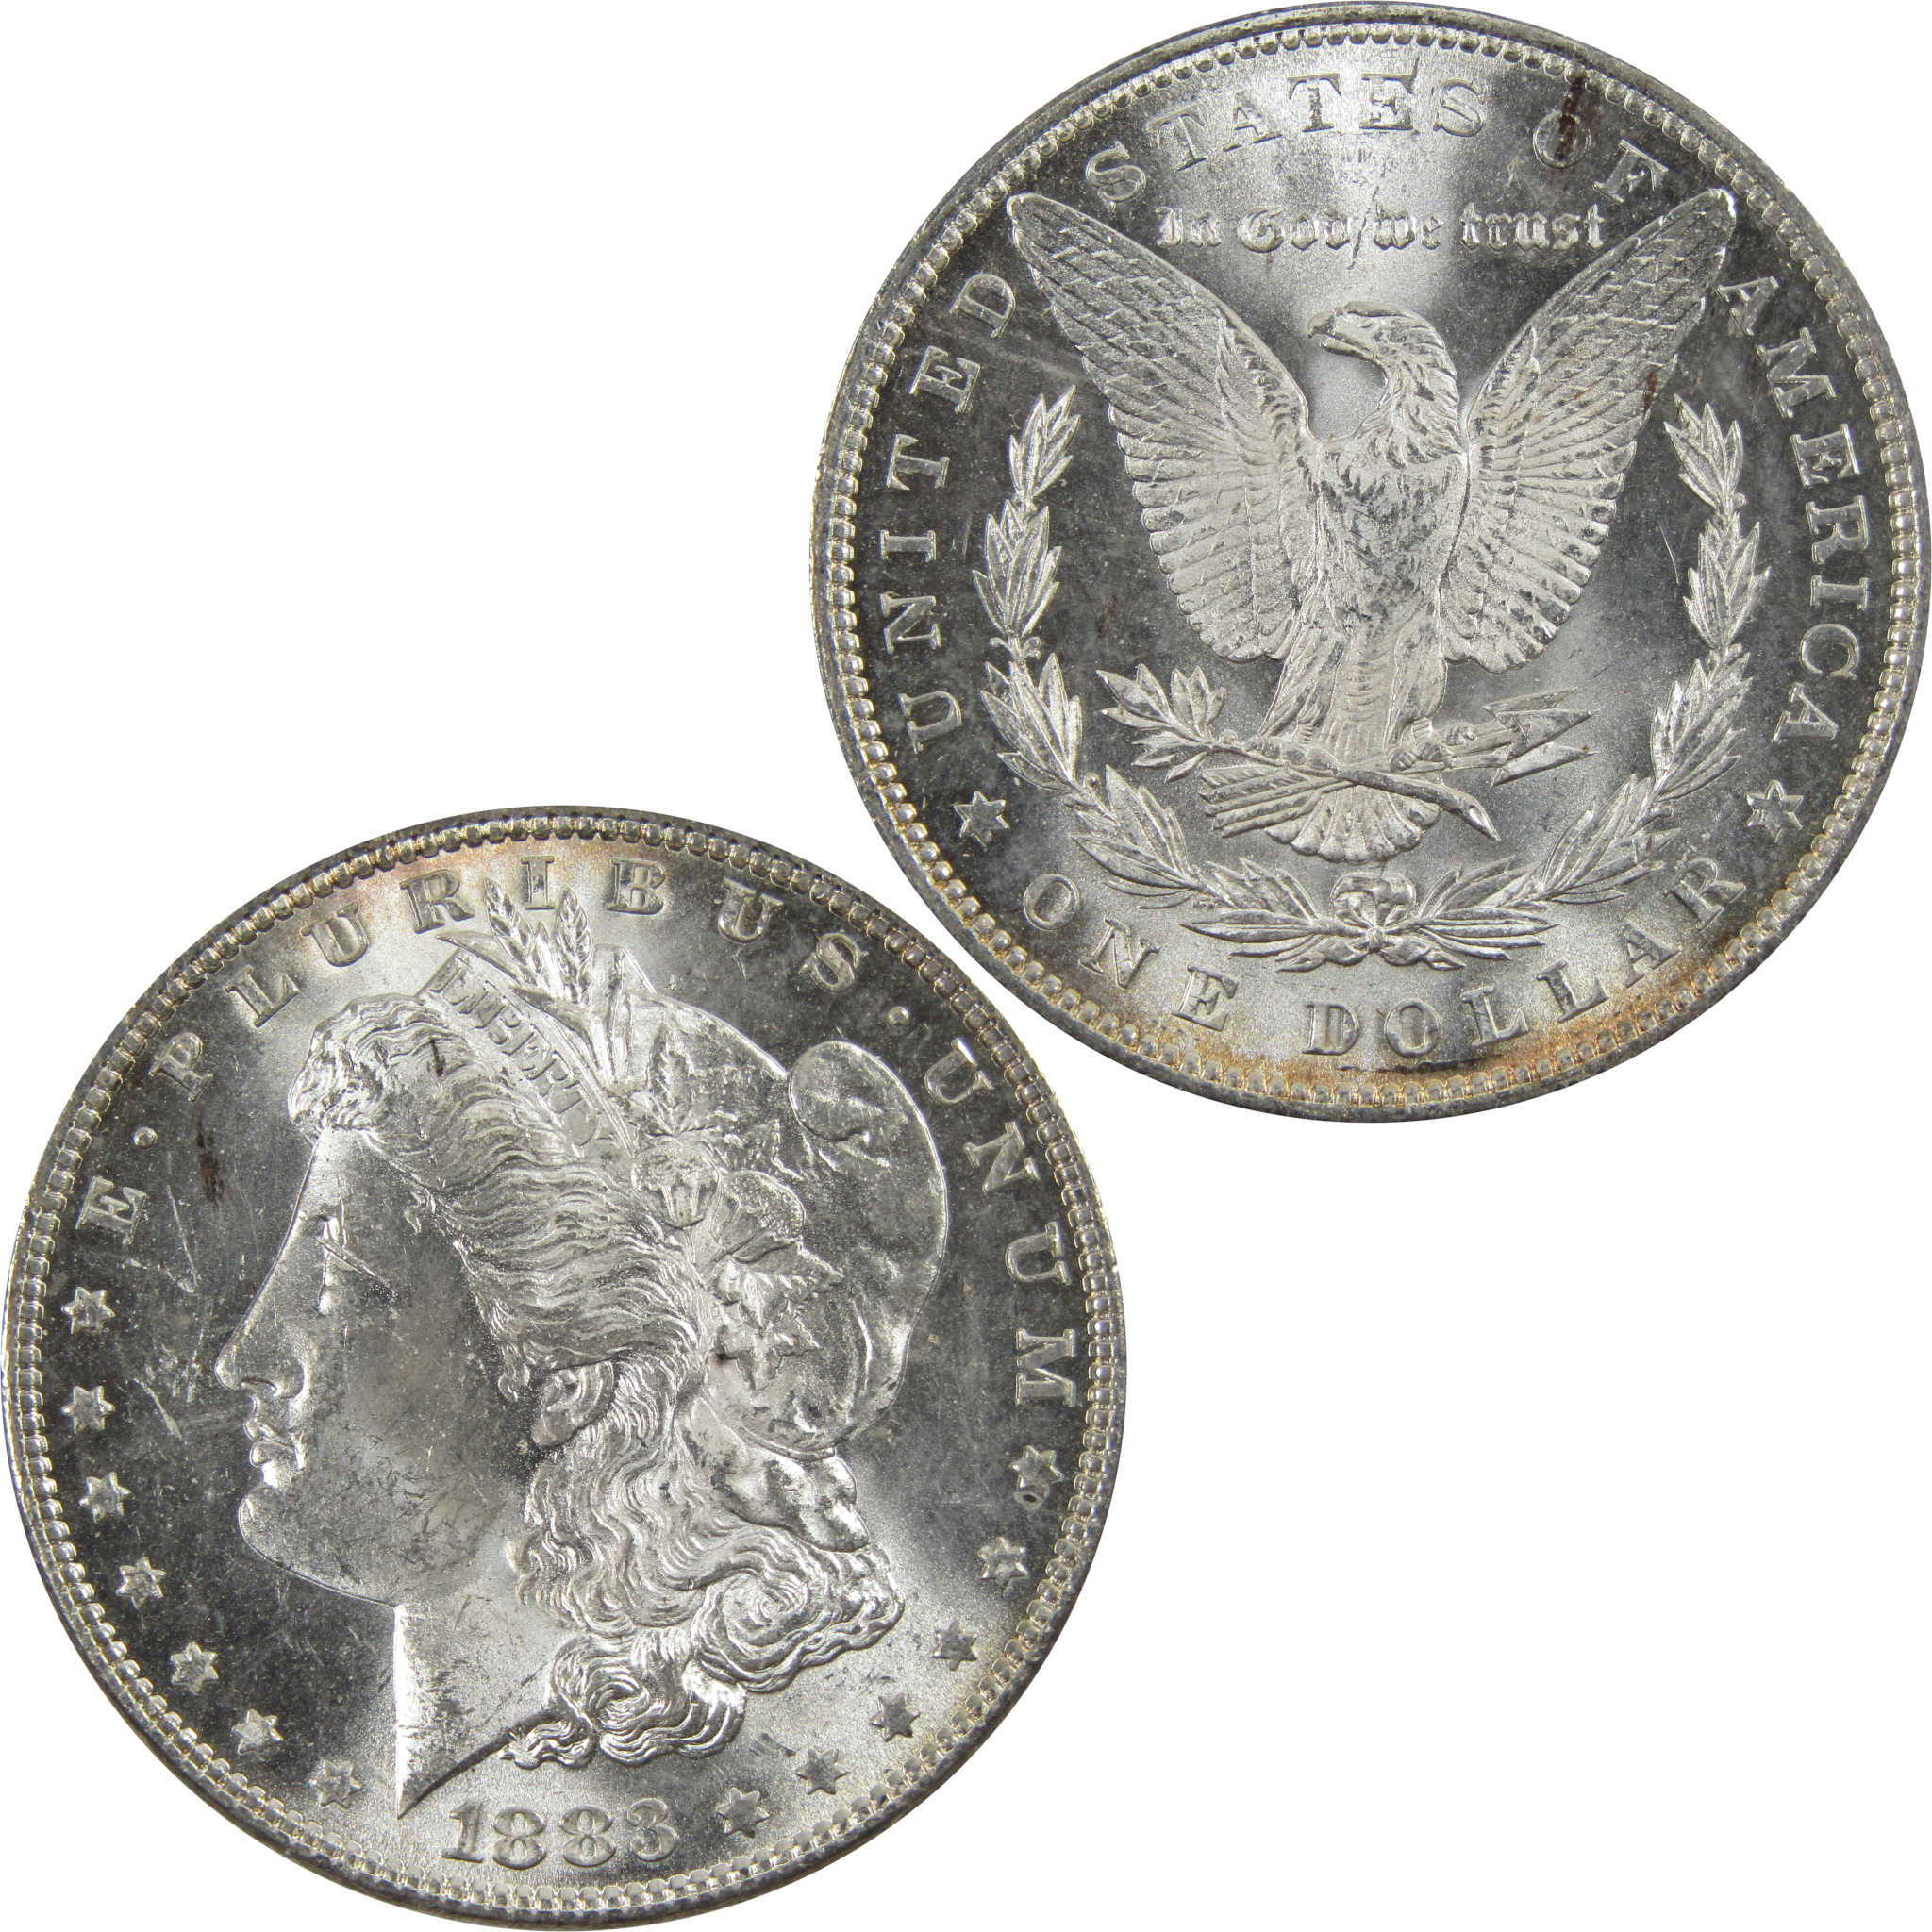 1883 Morgan Dollar BU Uncirculated 90% Silver $1 Coin SKU:I5175 - Morgan coin - Morgan silver dollar - Morgan silver dollar for sale - Profile Coins &amp; Collectibles